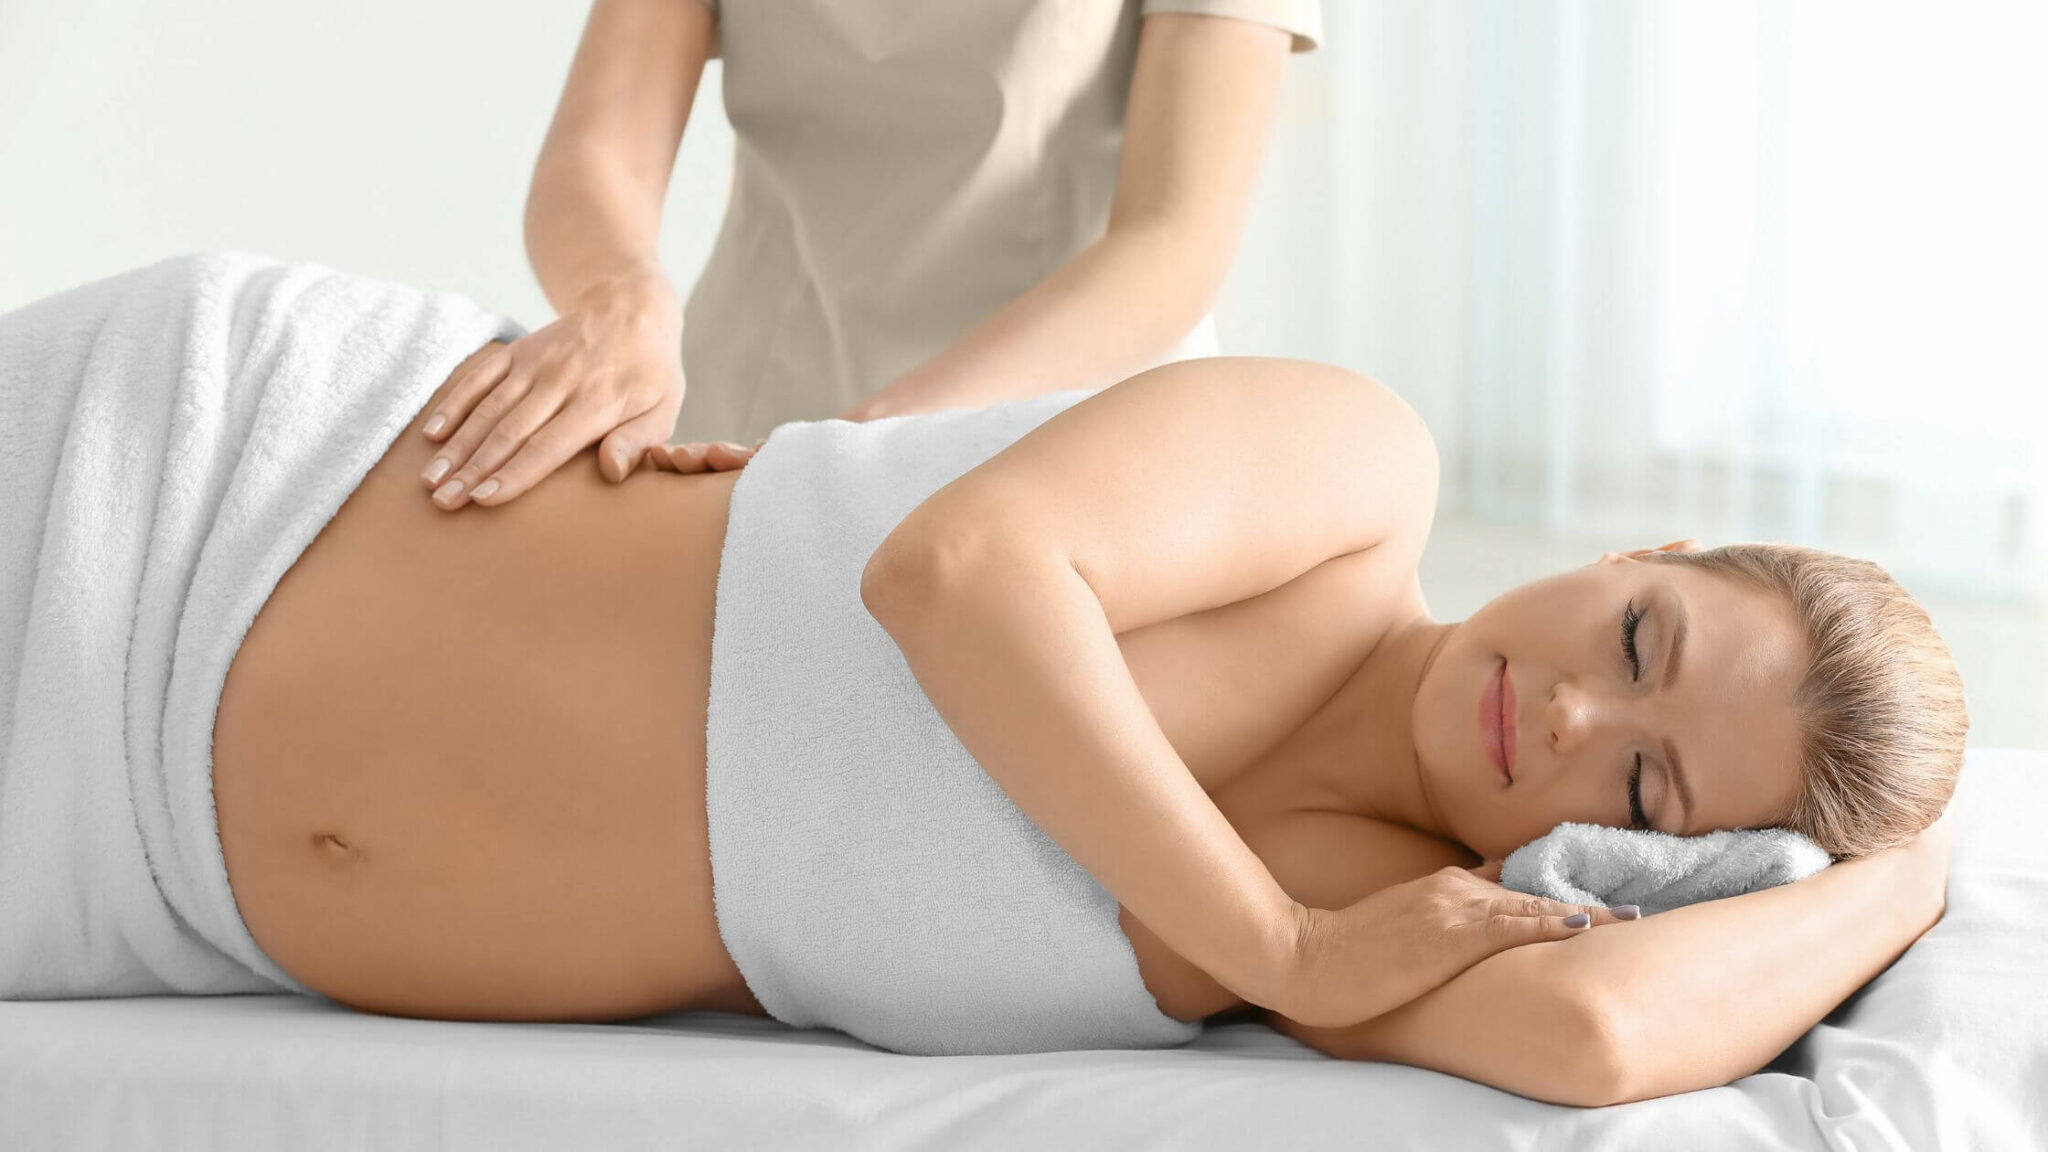 Fisioterapeuta realizando masaje de Drenaje Linfático Embarazadas a una paciente